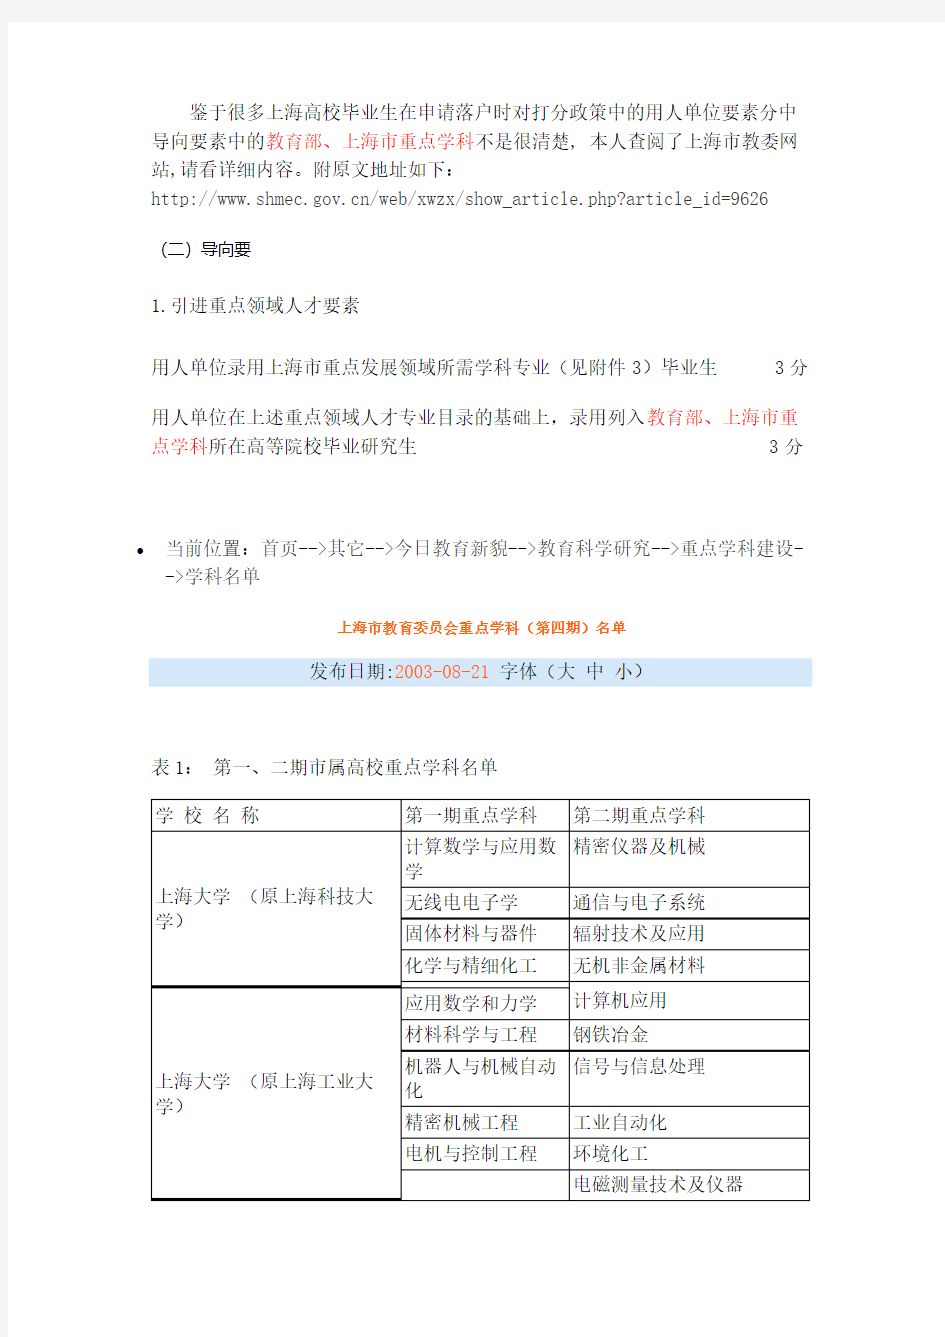 上海市教育委员会重点学科名单全,截至2014年共四期